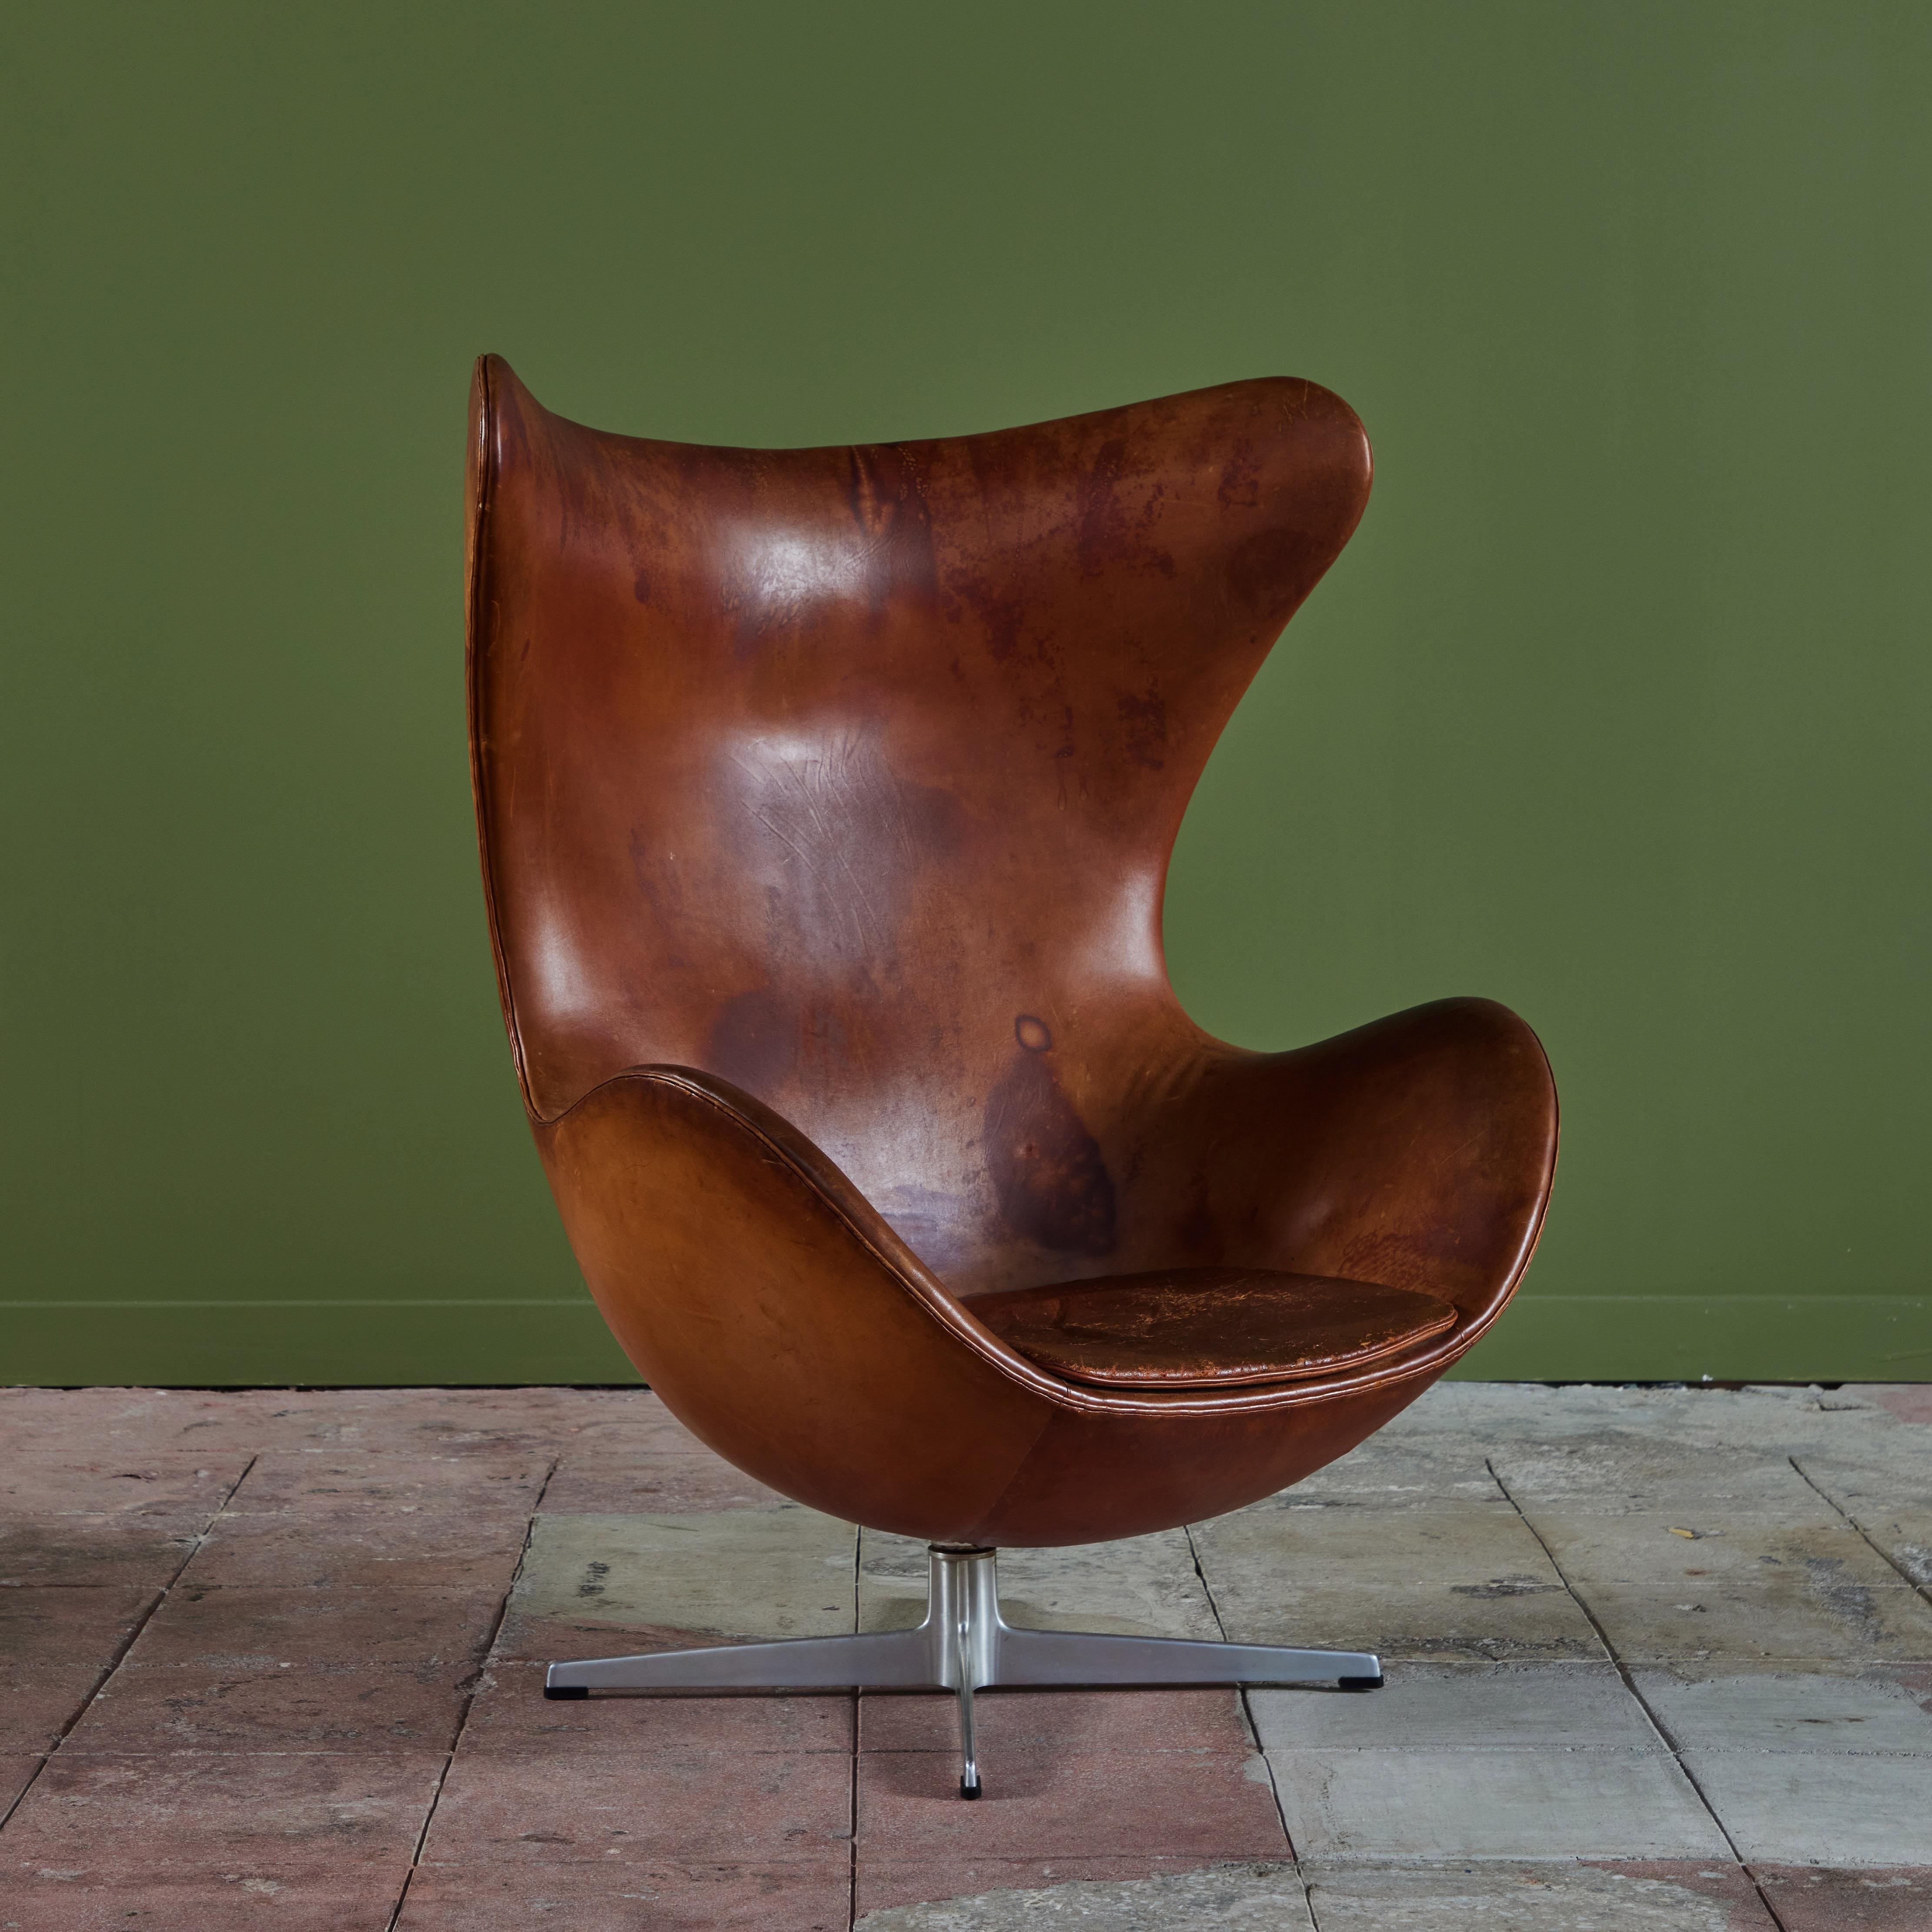 Der ikonische, von Arne Jacobsen entworfene Eierstuhl, ca. 1960er Jahre, Dänemark. Der Stuhl verfügt über das originale, sattelfarbene Leder mit seiner eigenen, unverwechselbaren Patina. Der Stuhl mit hoher Rückenlehne hat ein Sitzkissen und ist um